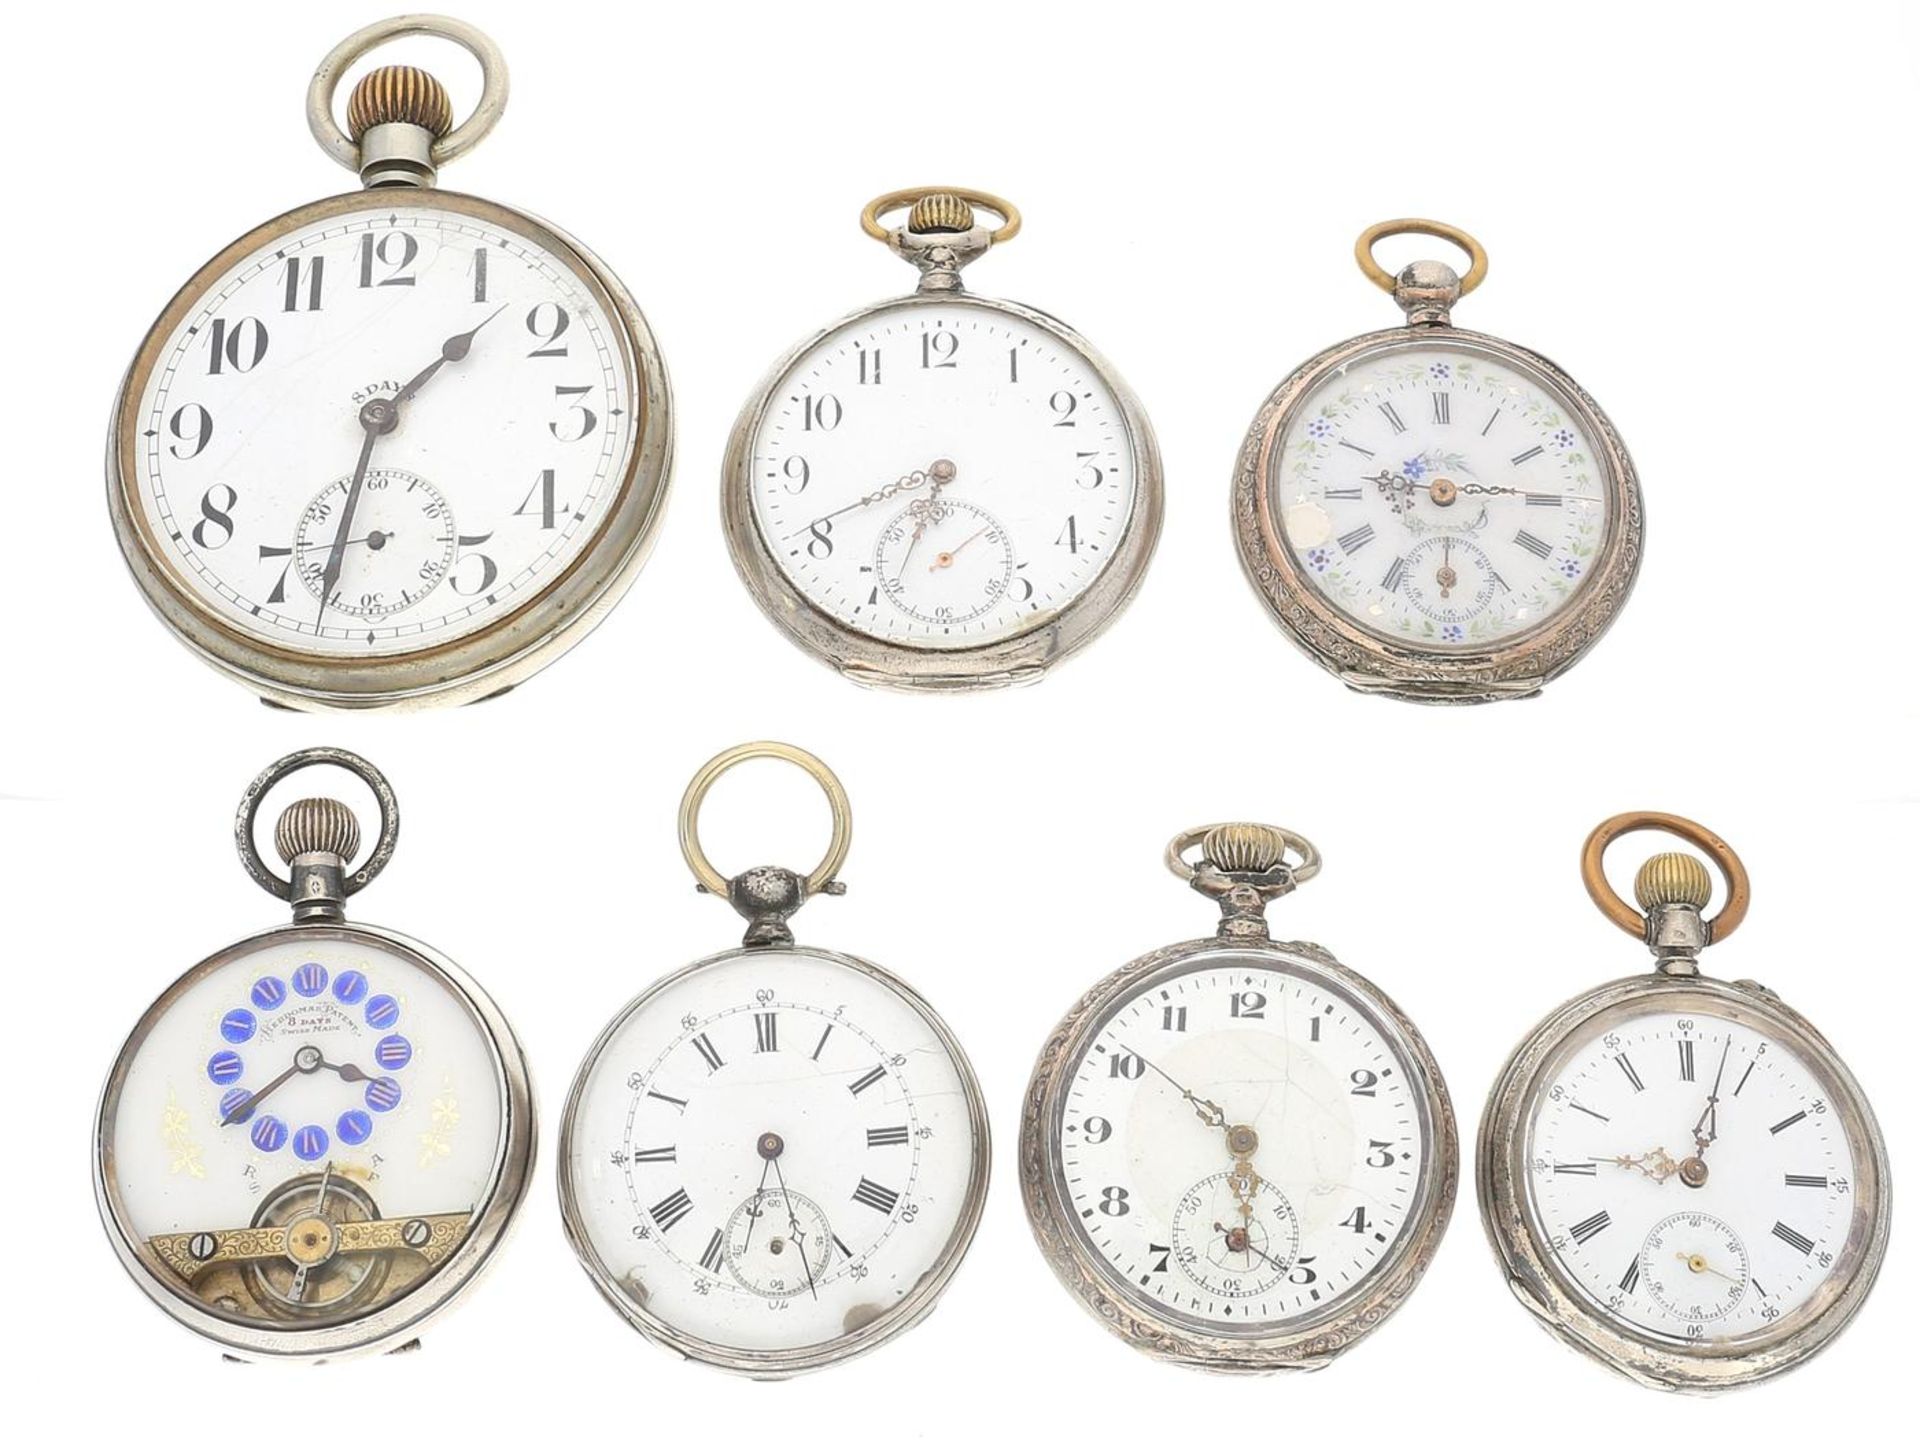 Taschenuhr: Konvolut von 7 alten Taschenuhren, ca.1870-1920, dabei 2 seltene 8-Tage-Uhren 1.